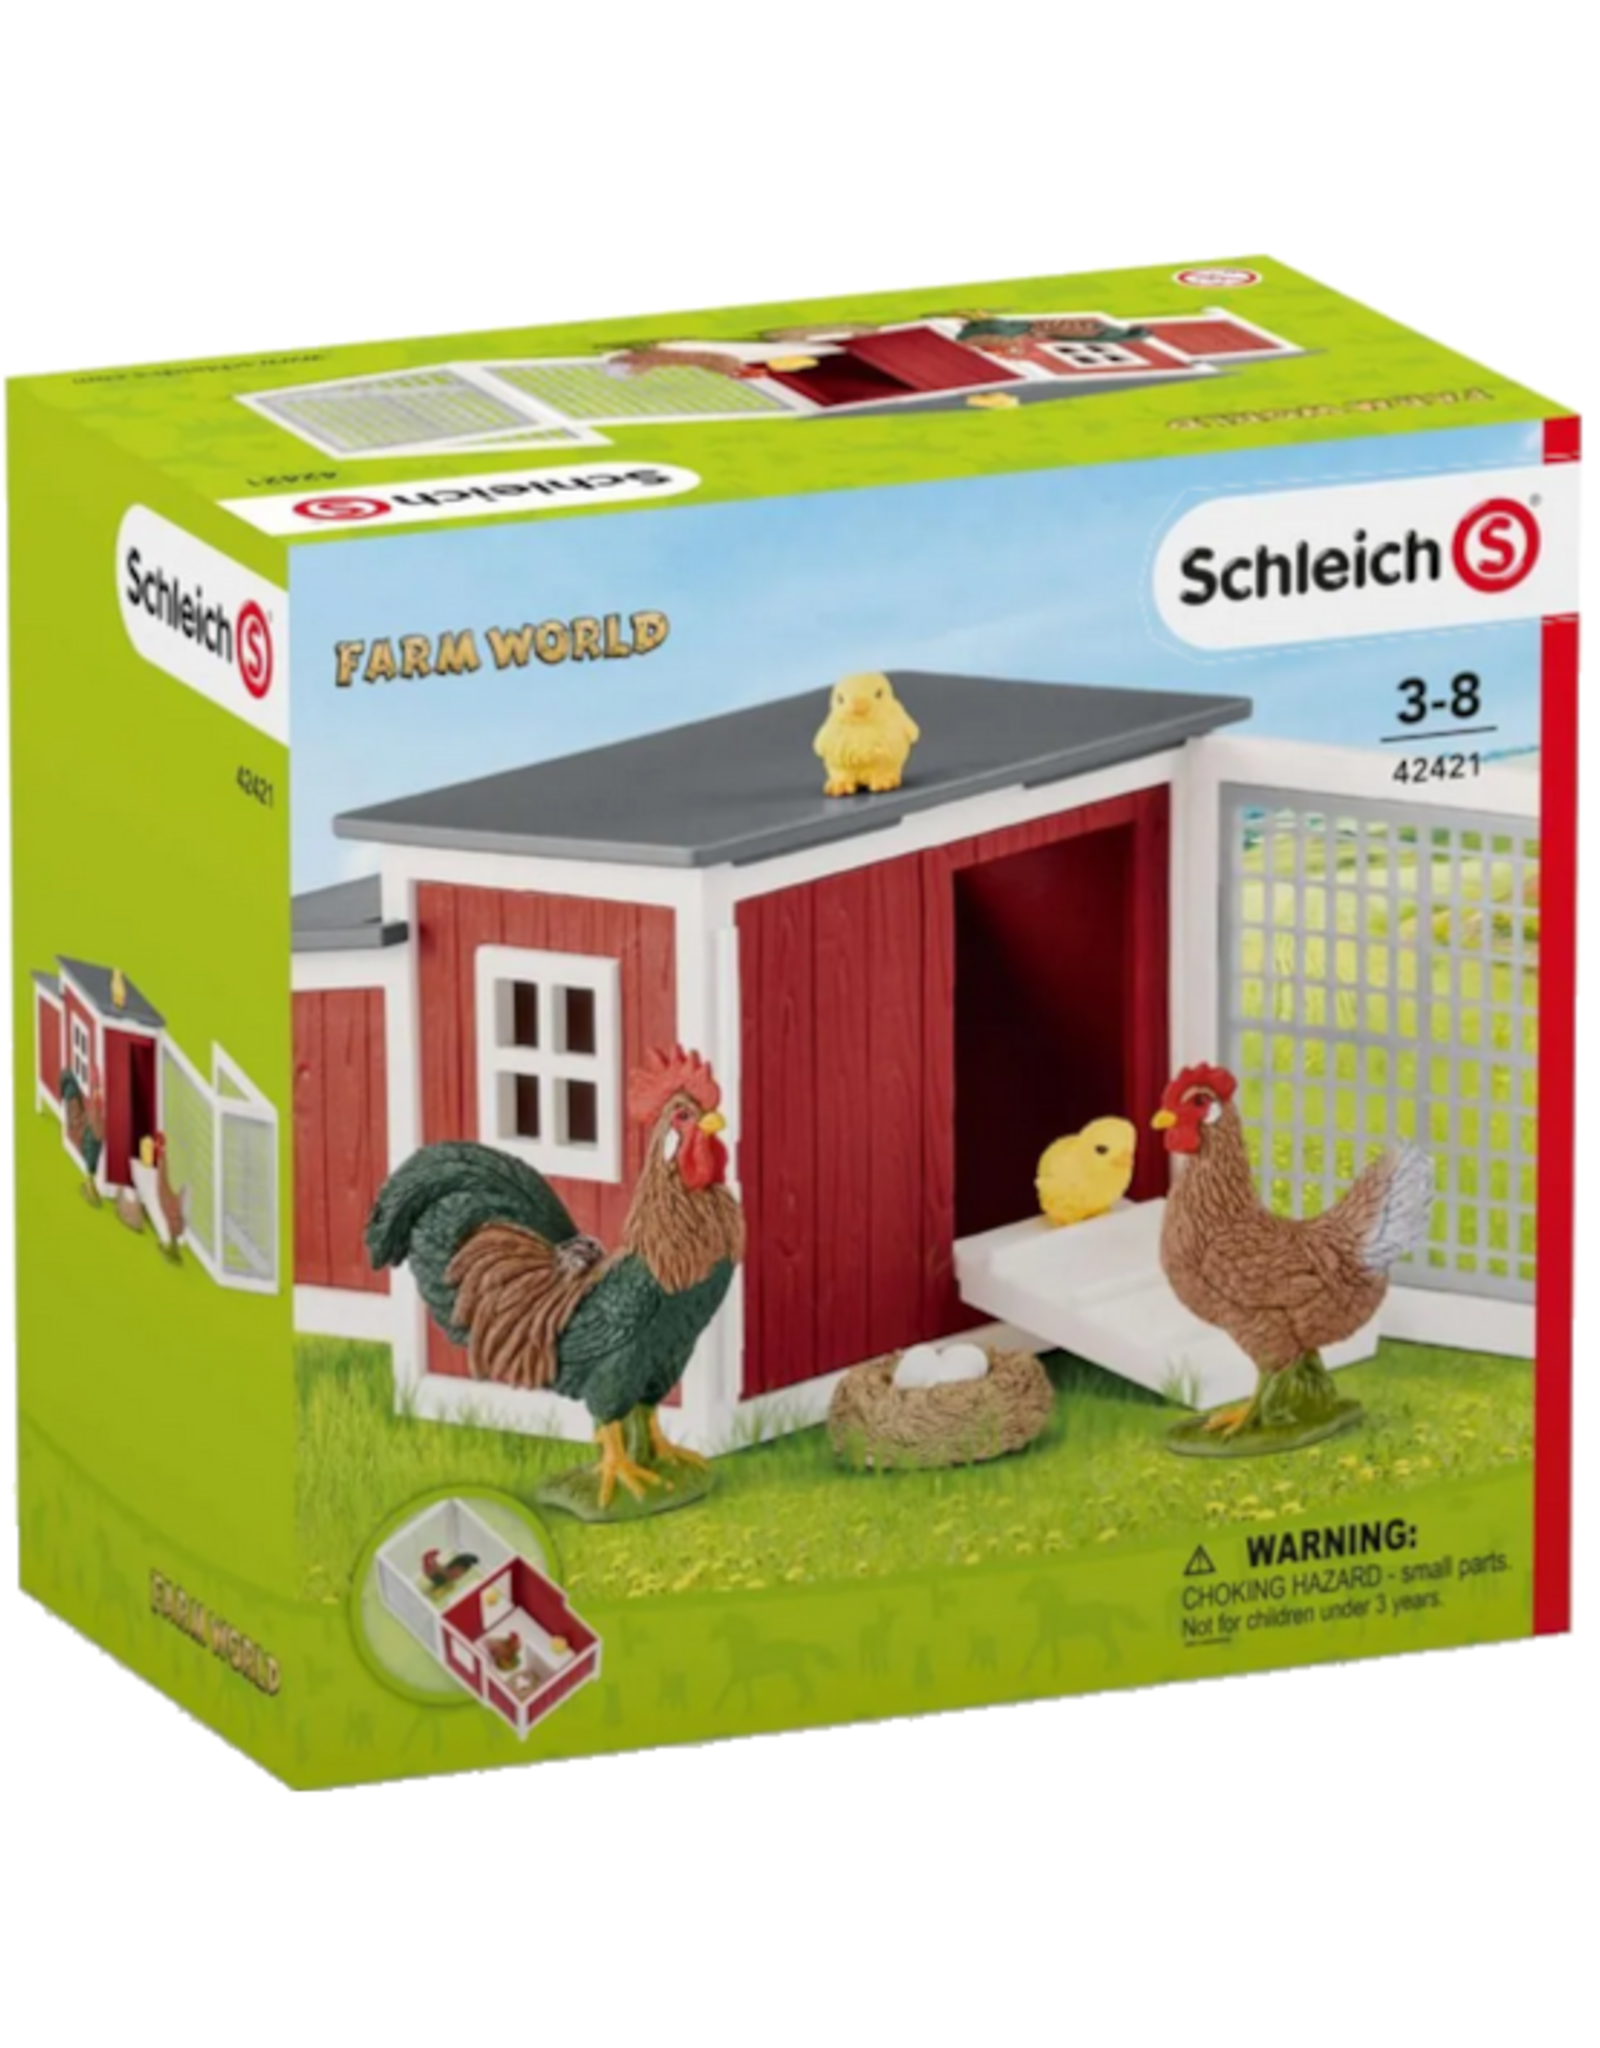 Schleich Schleich - Farm World - 42421 - Chicken Coop